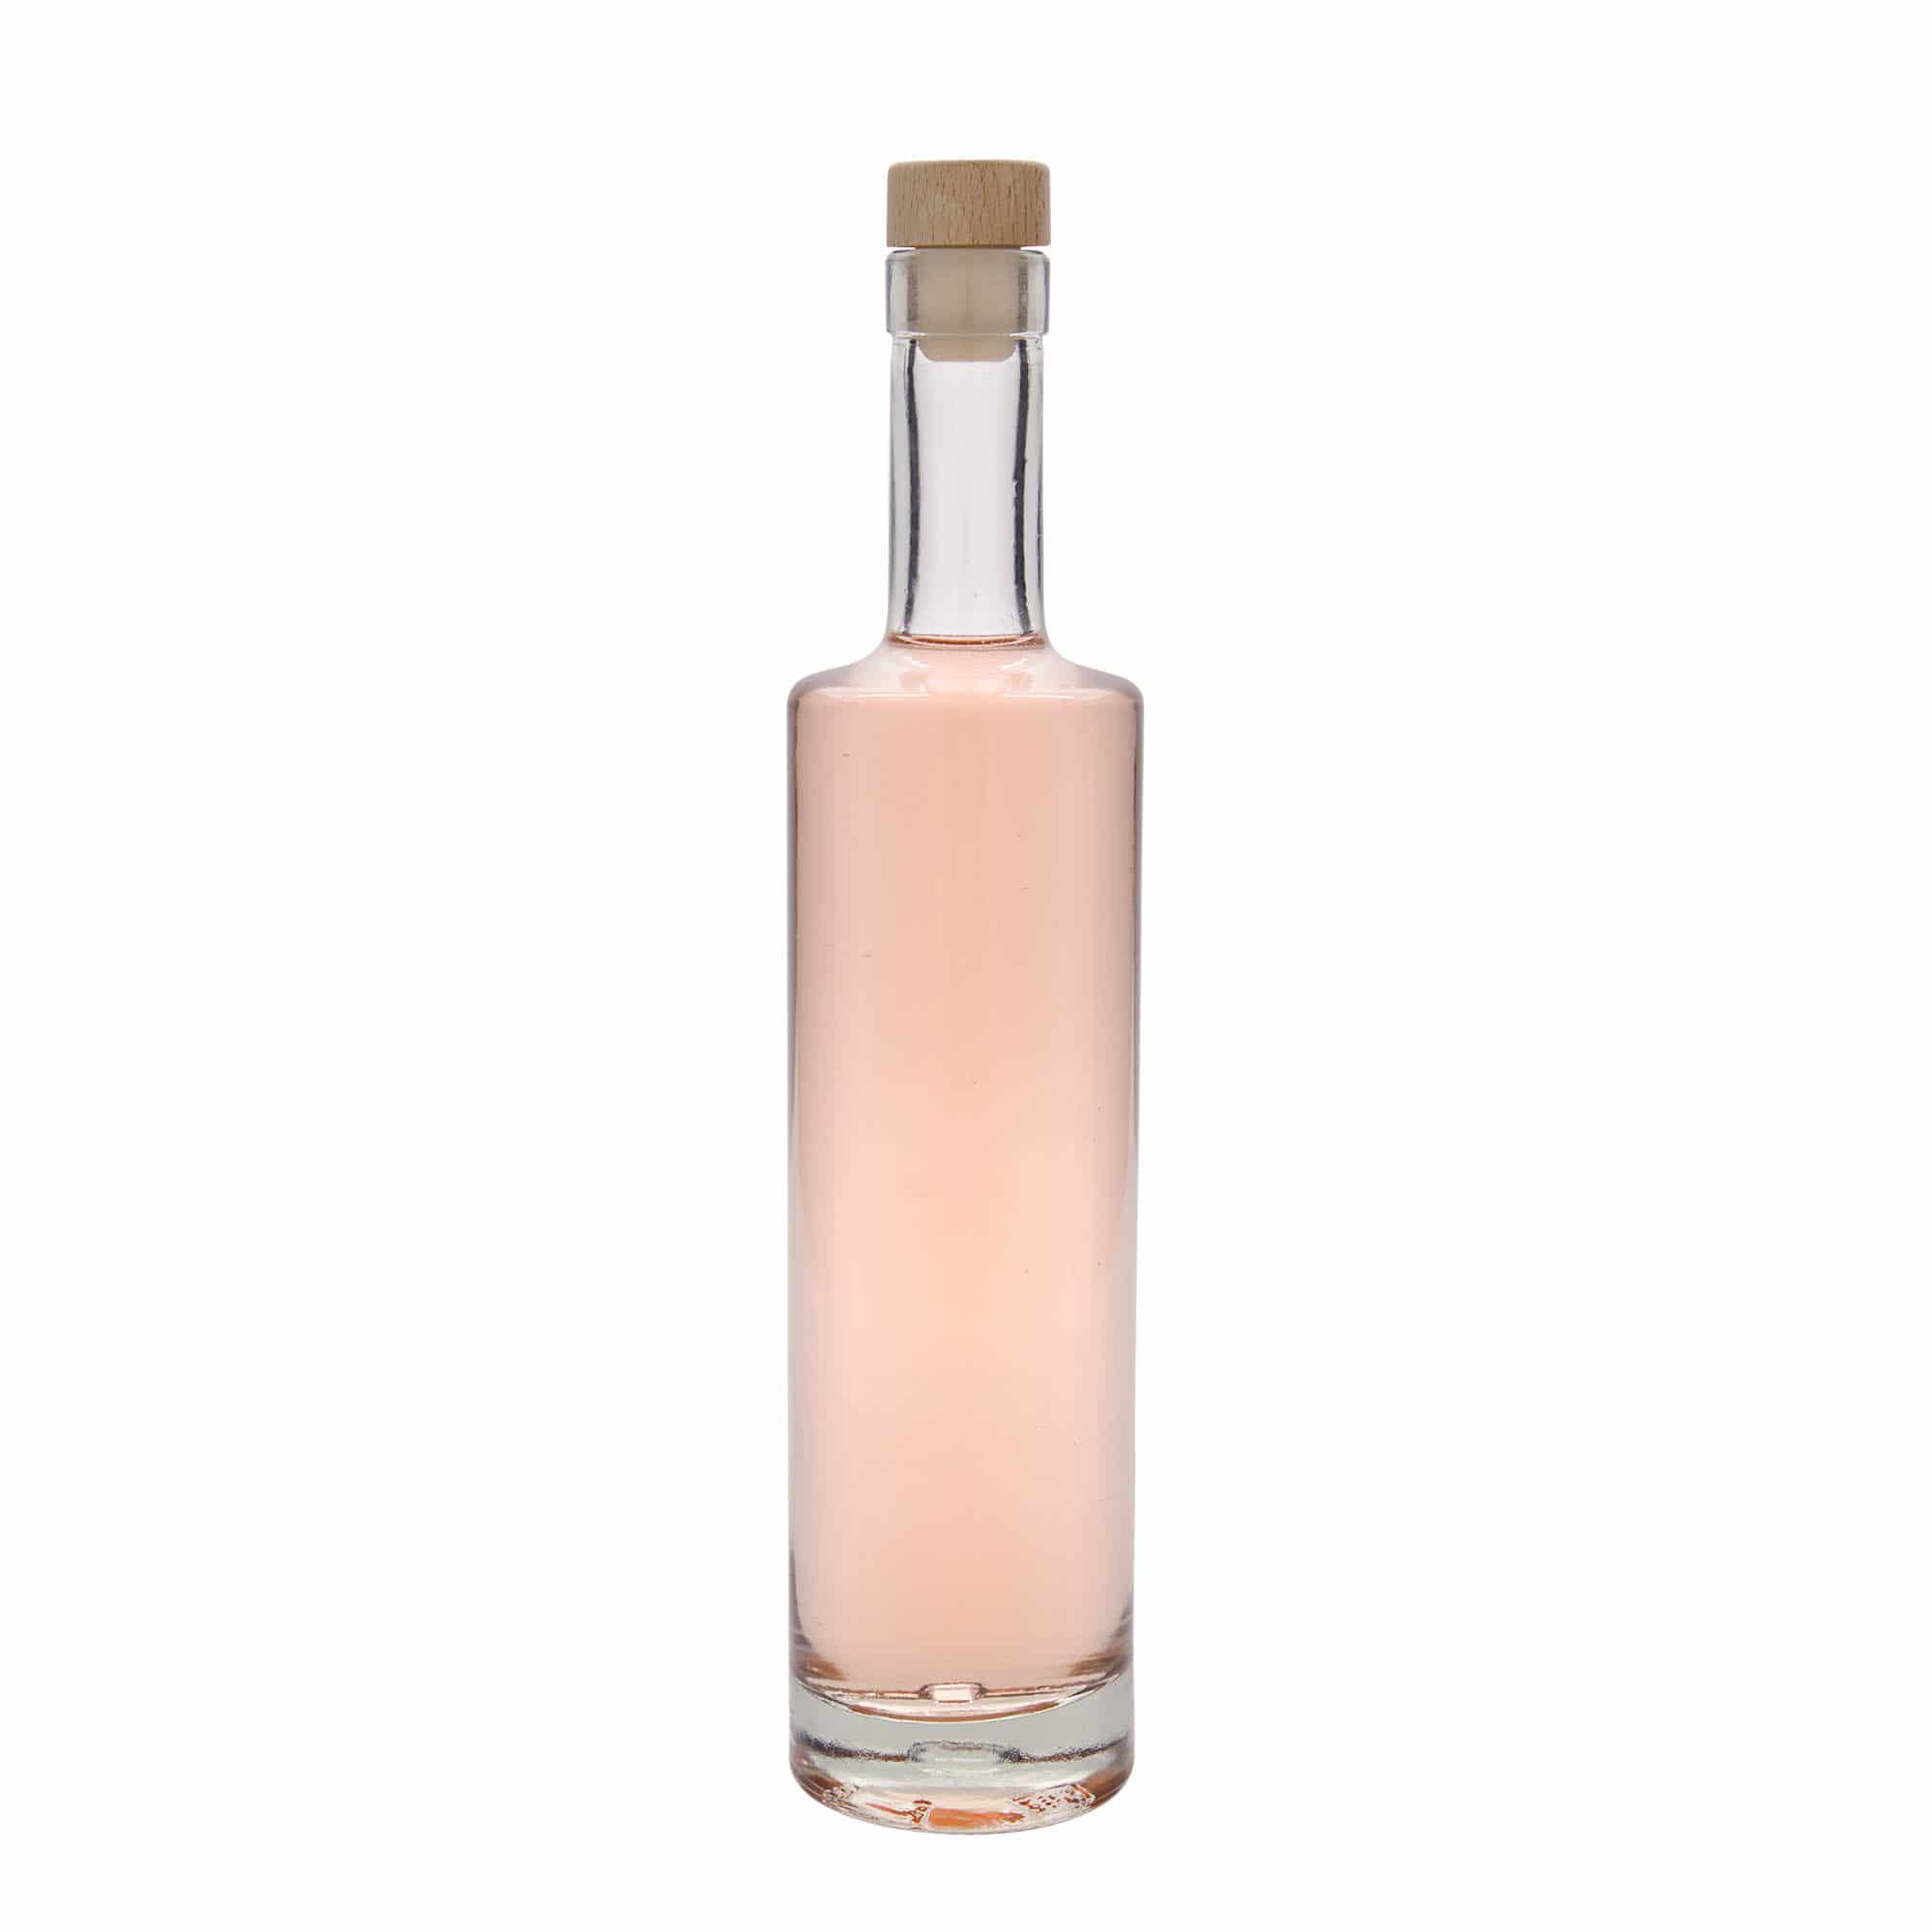 Skleněná lahev 500 ml 'Centurio', uzávěr: korek